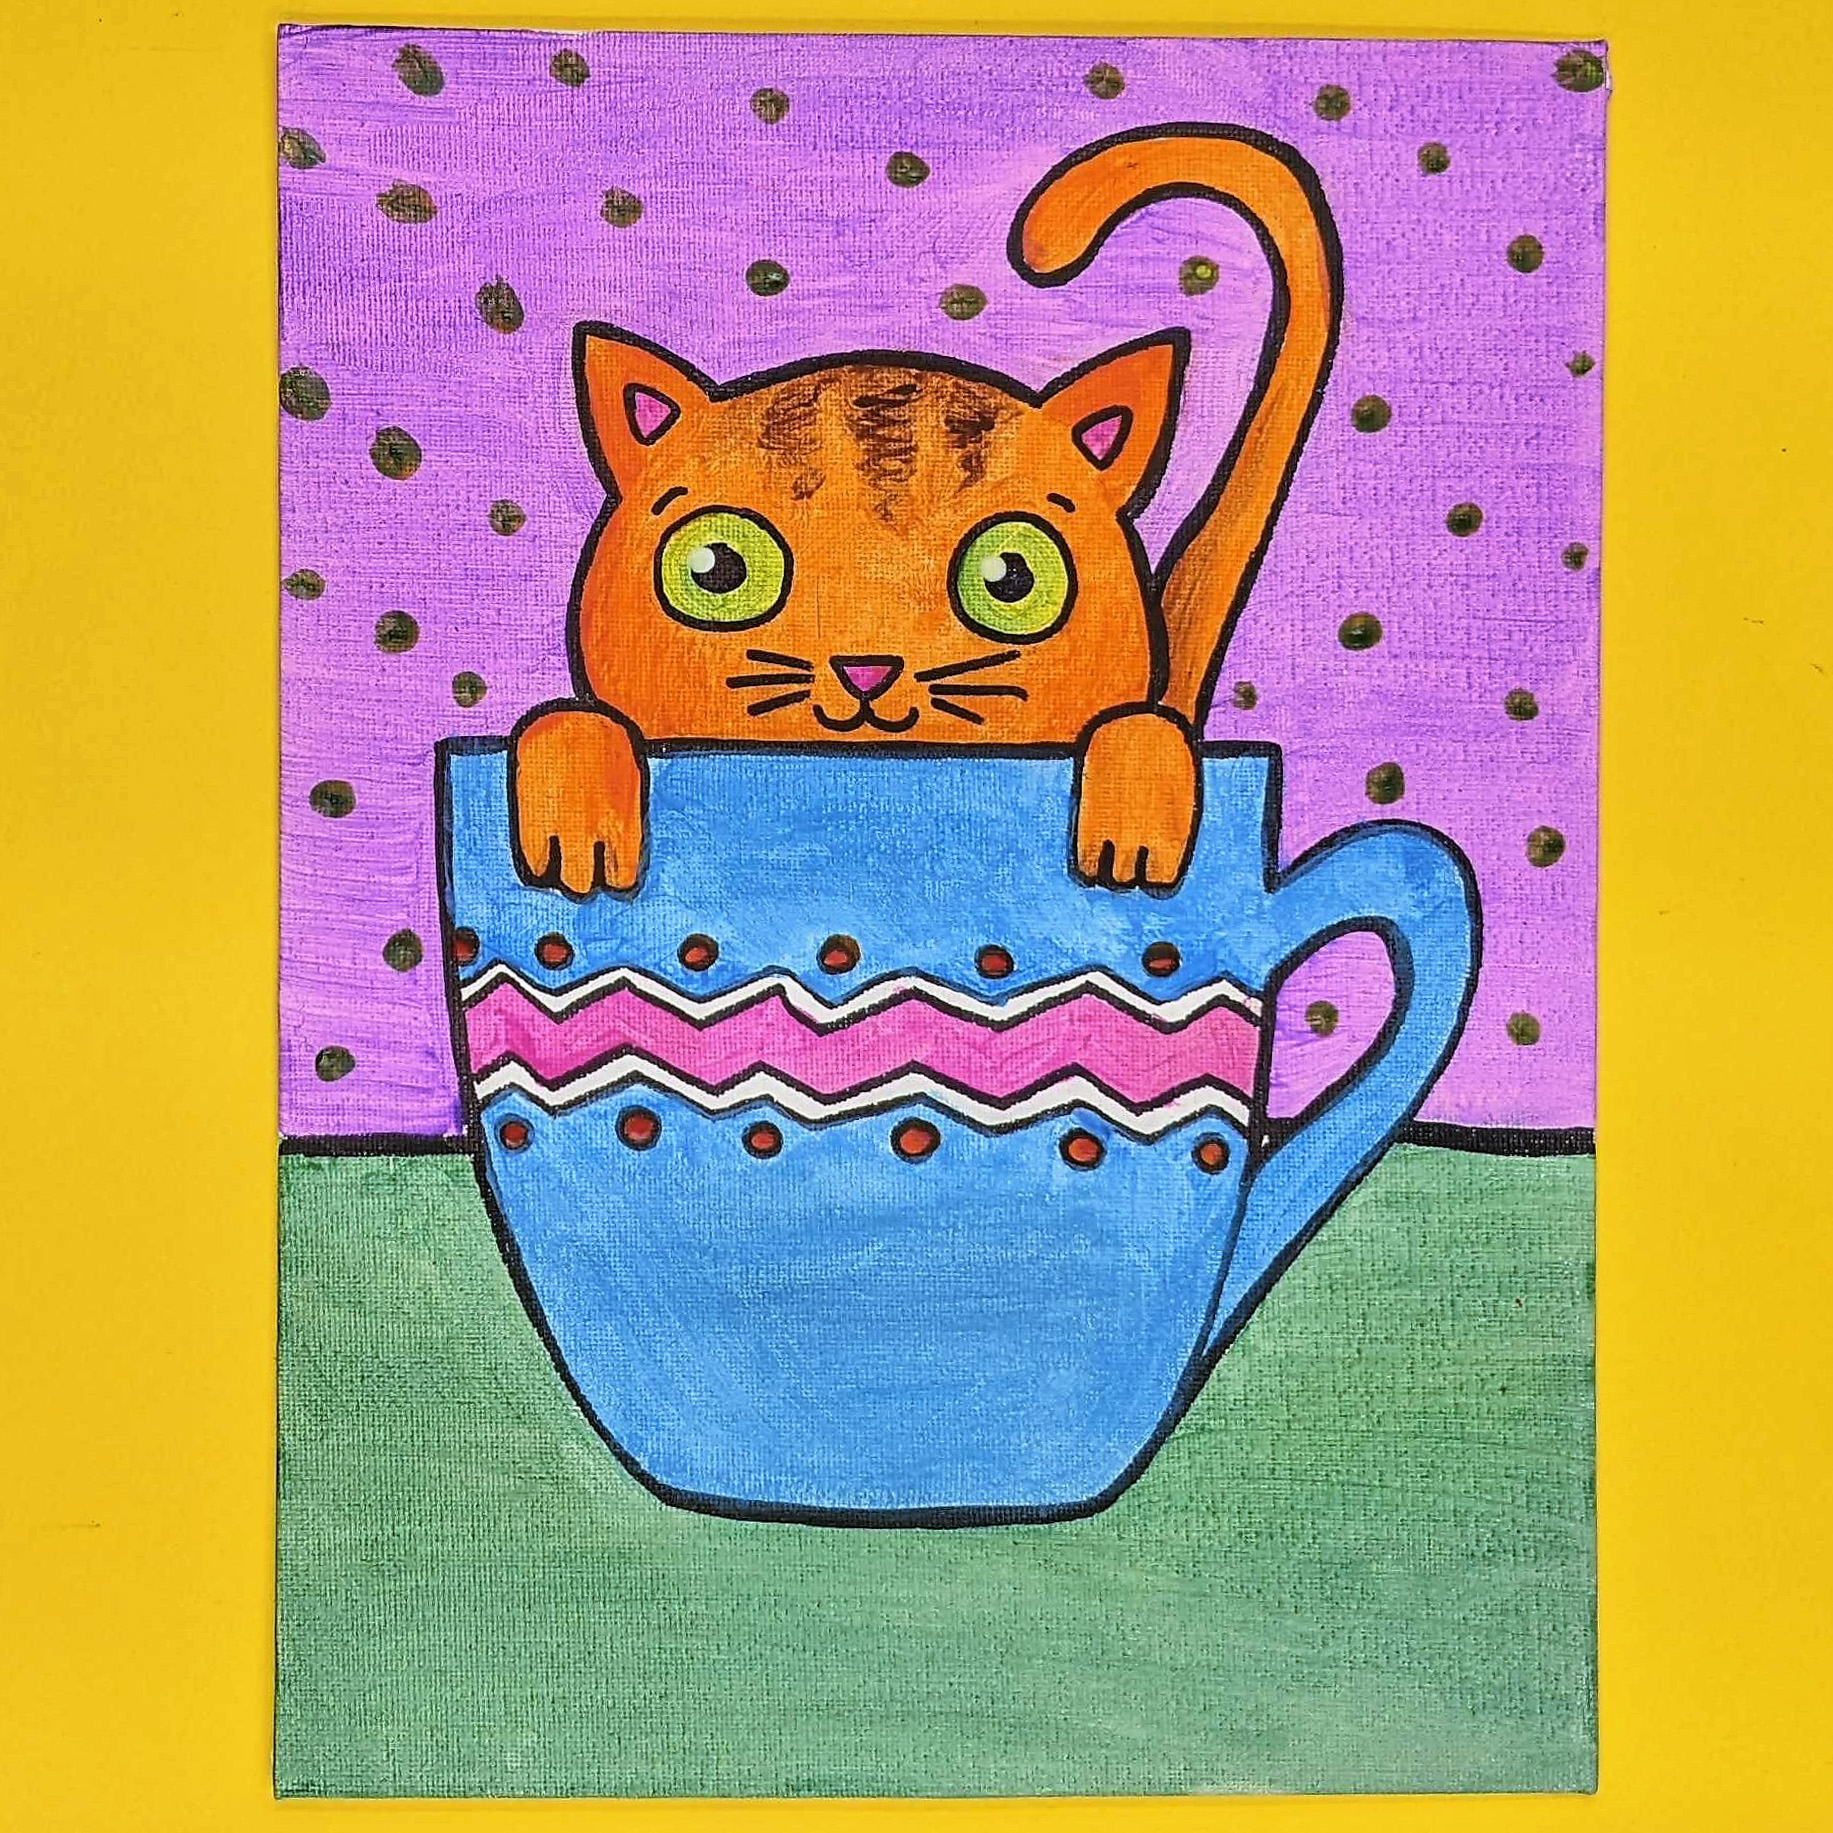 Kidcreate Studio - Eden Prairie, Teacup Kitten Art Project